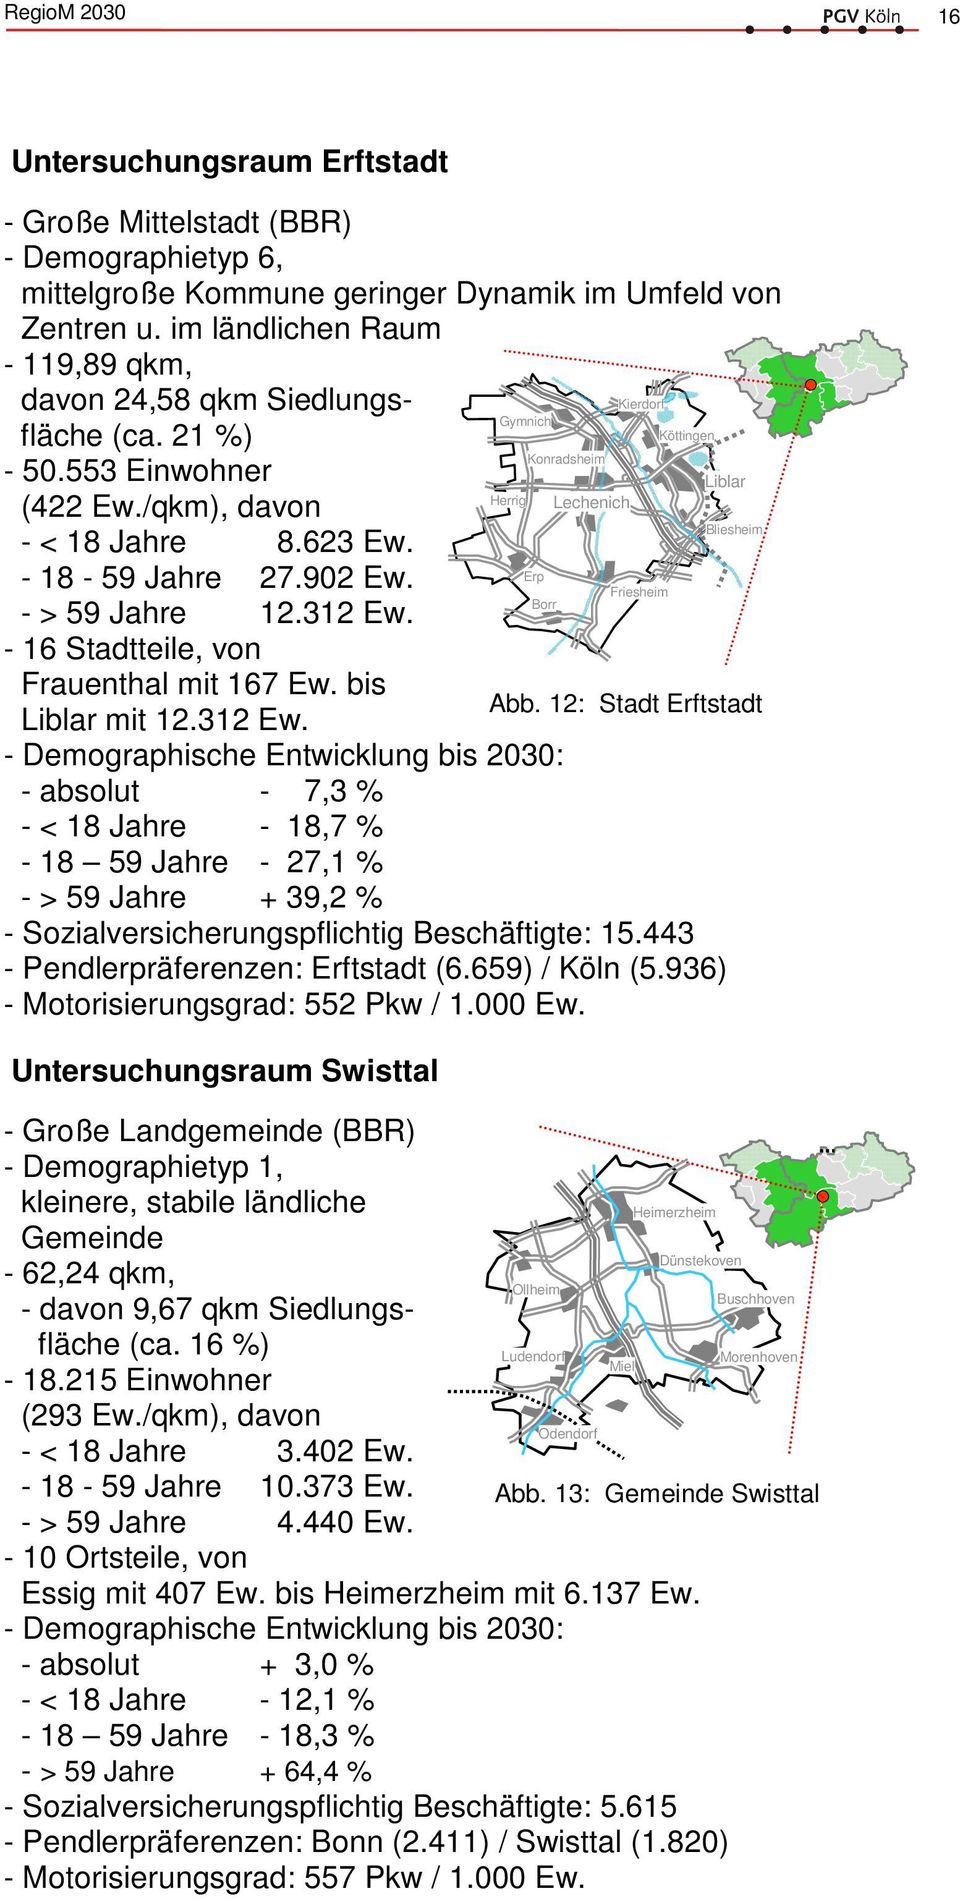 - 16 Stadtteile, von Frauenthal mit 167 Ew. bis Liblar mit 12.312 Ew.